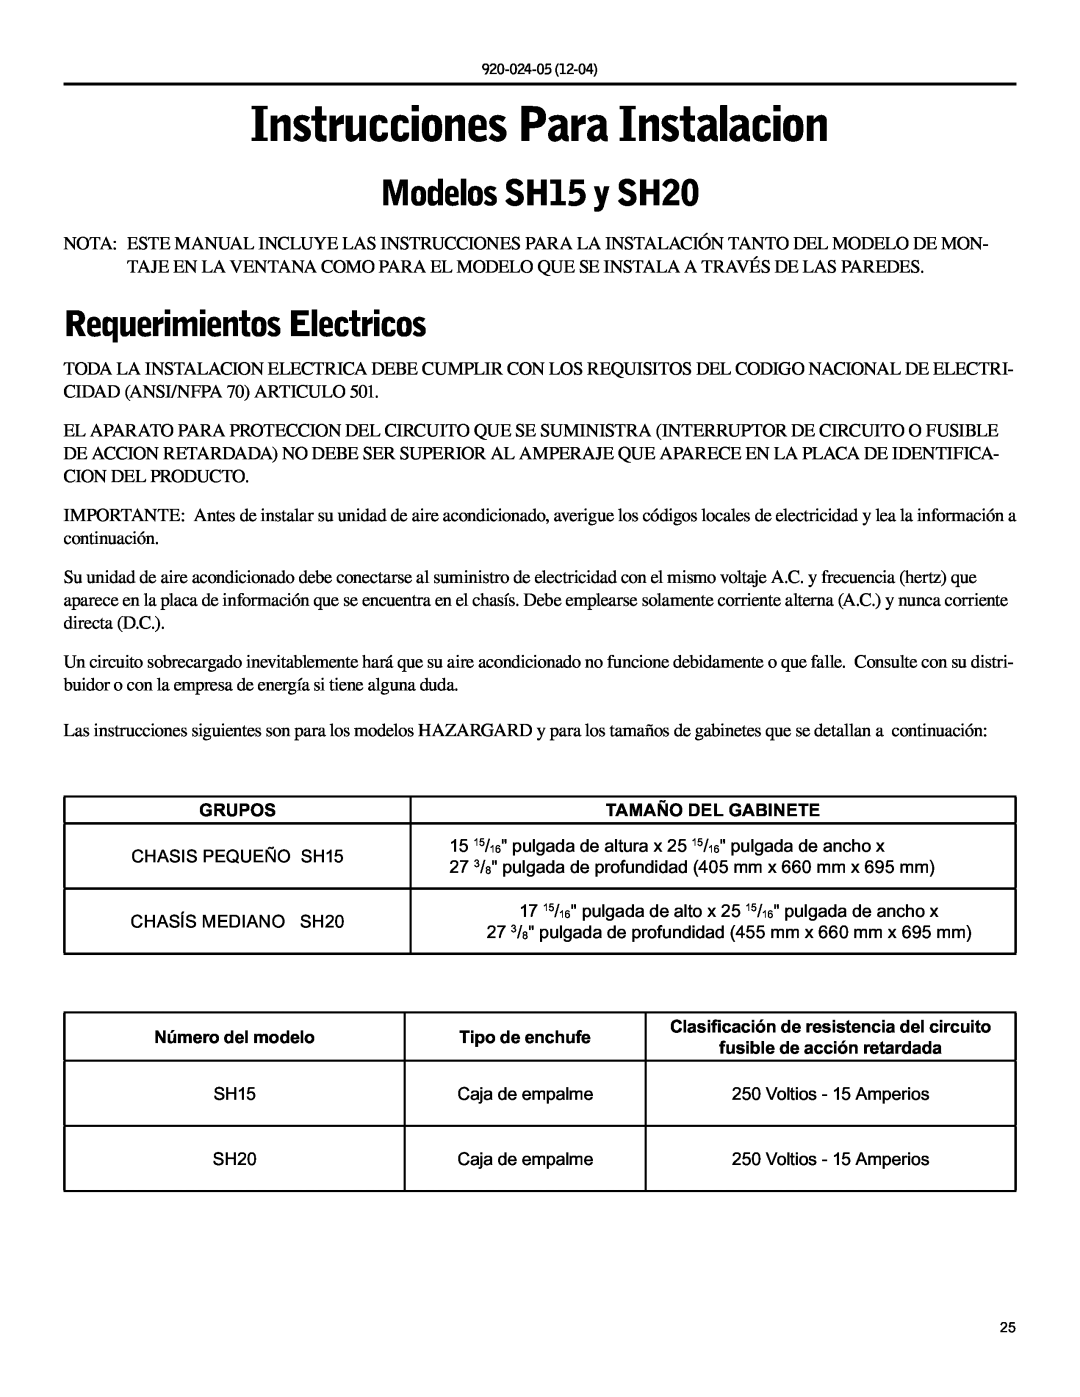 Friedrich operation manual Instrucciones Para Instalacion, Modelos SH15 y SH20, Requerimientos Electricos 